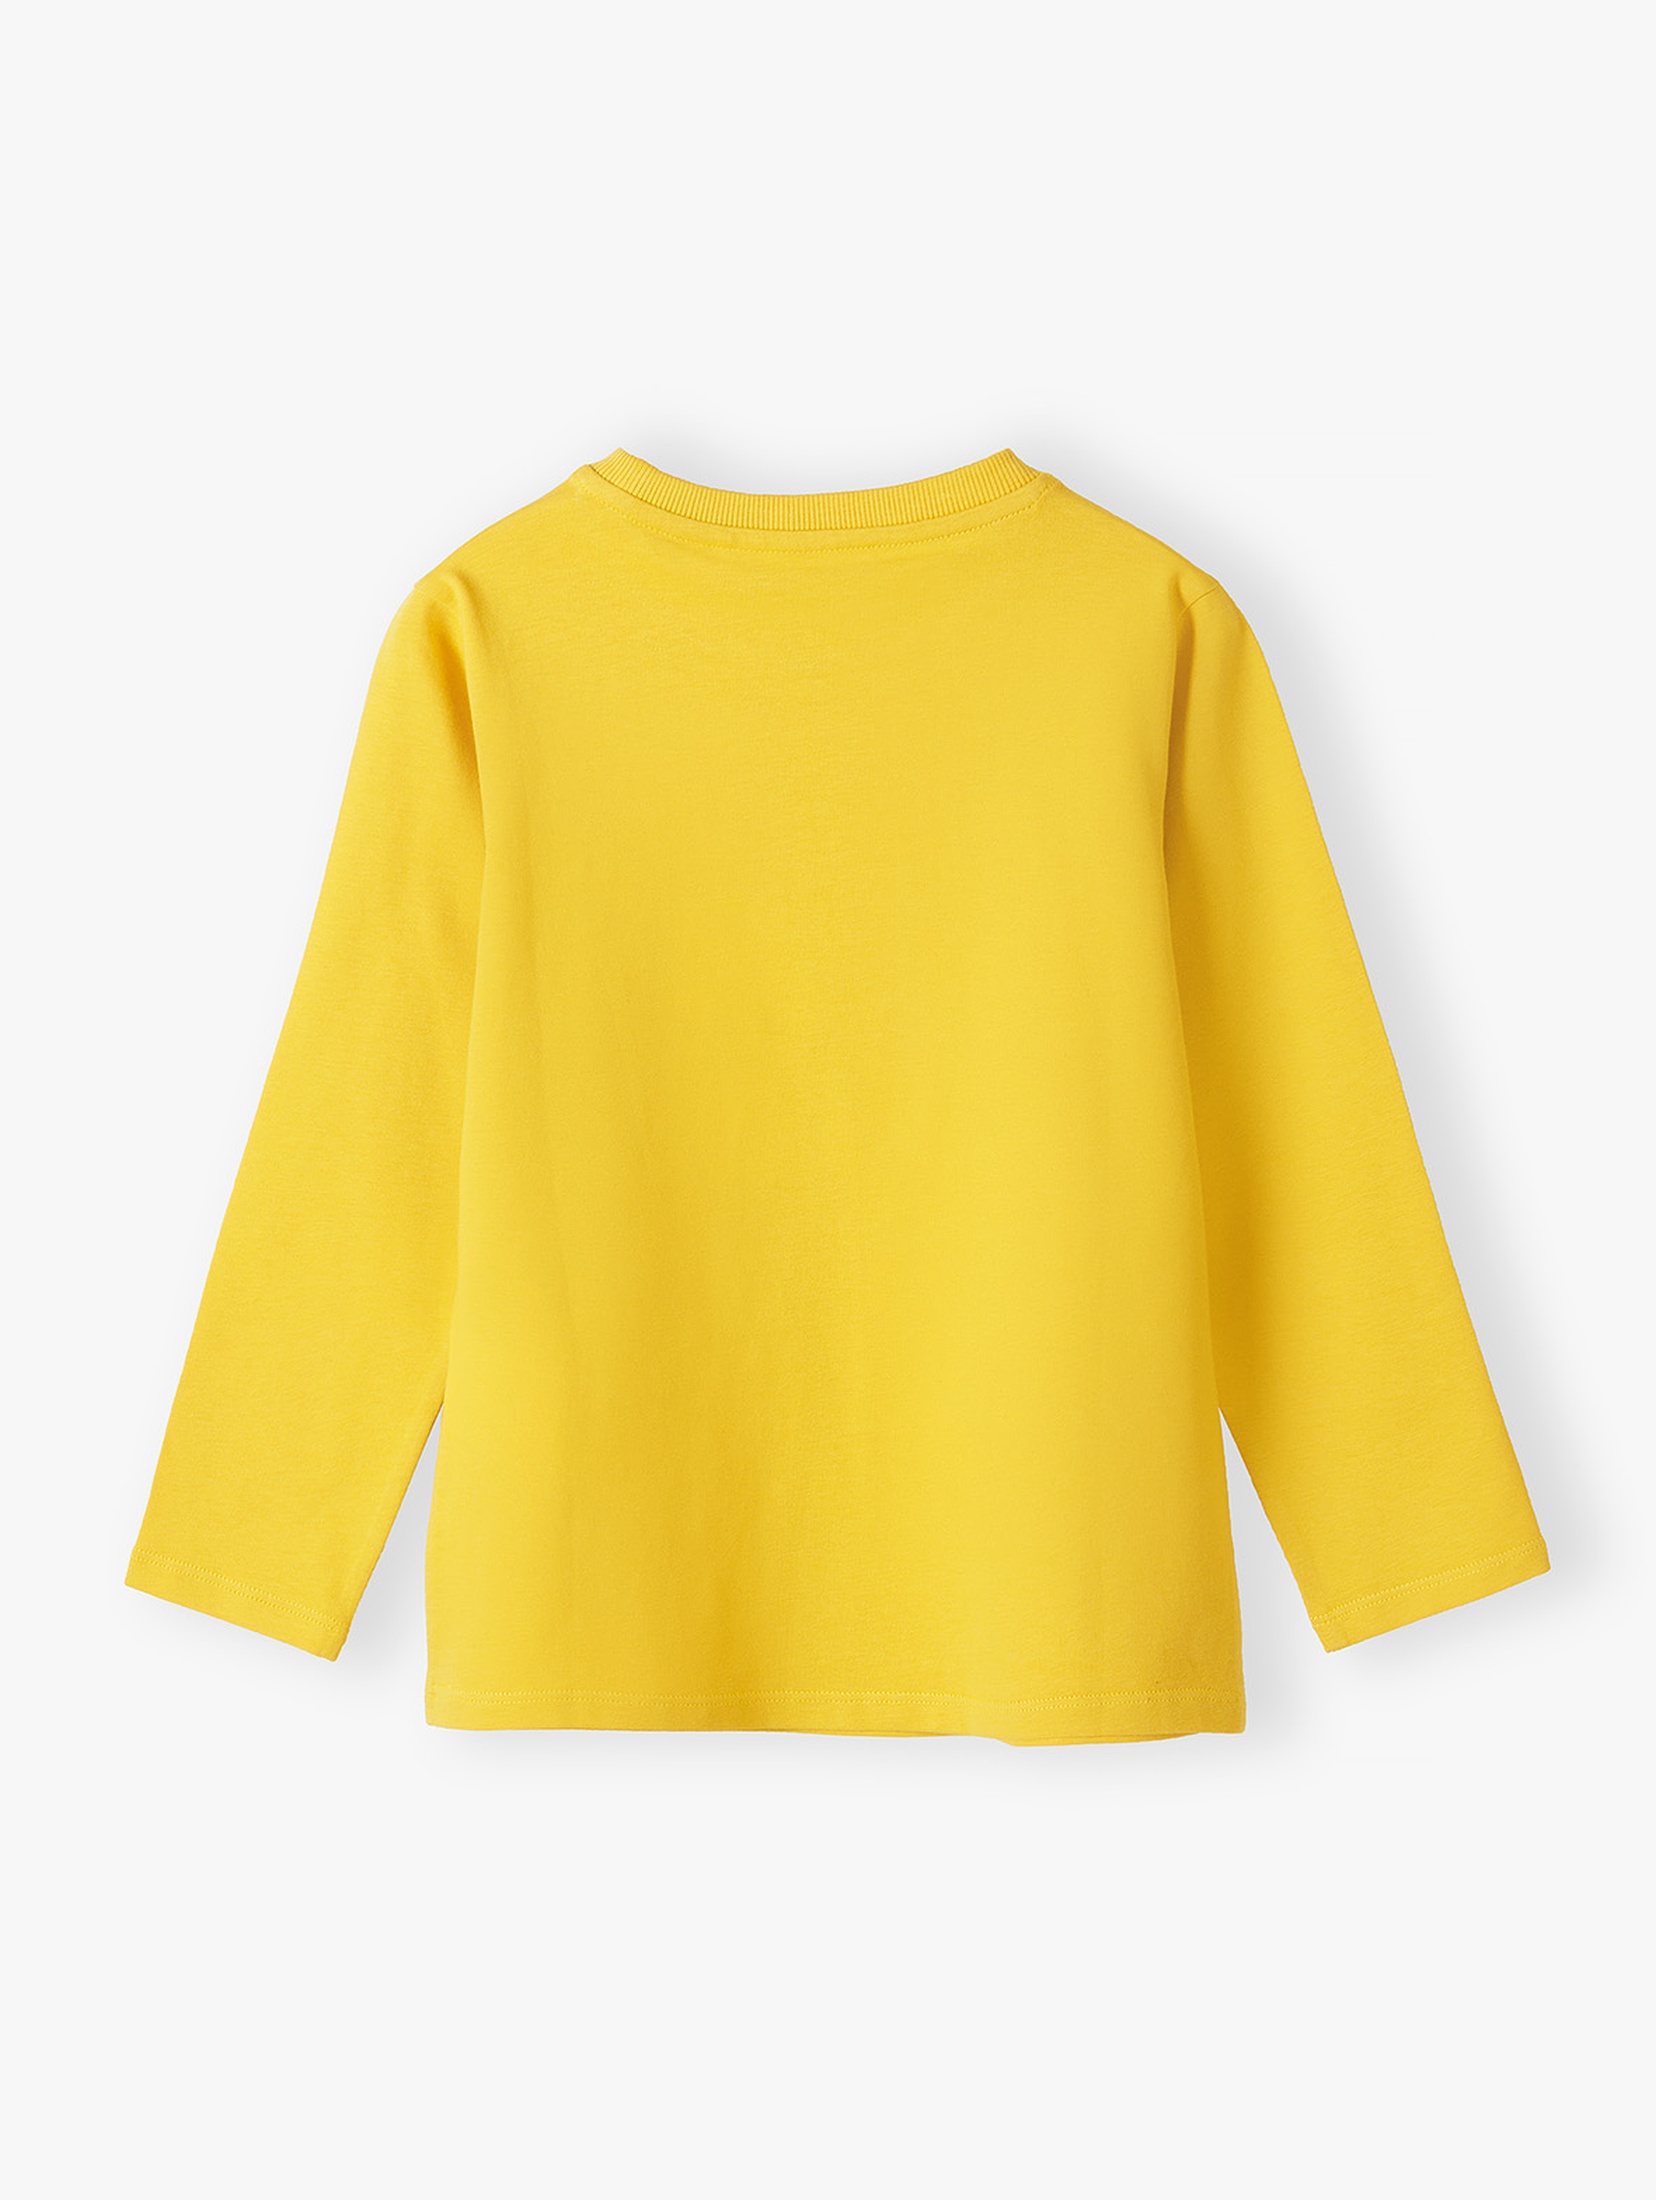 Żółta bluzka chłopięca bawełniana z nadrukiem